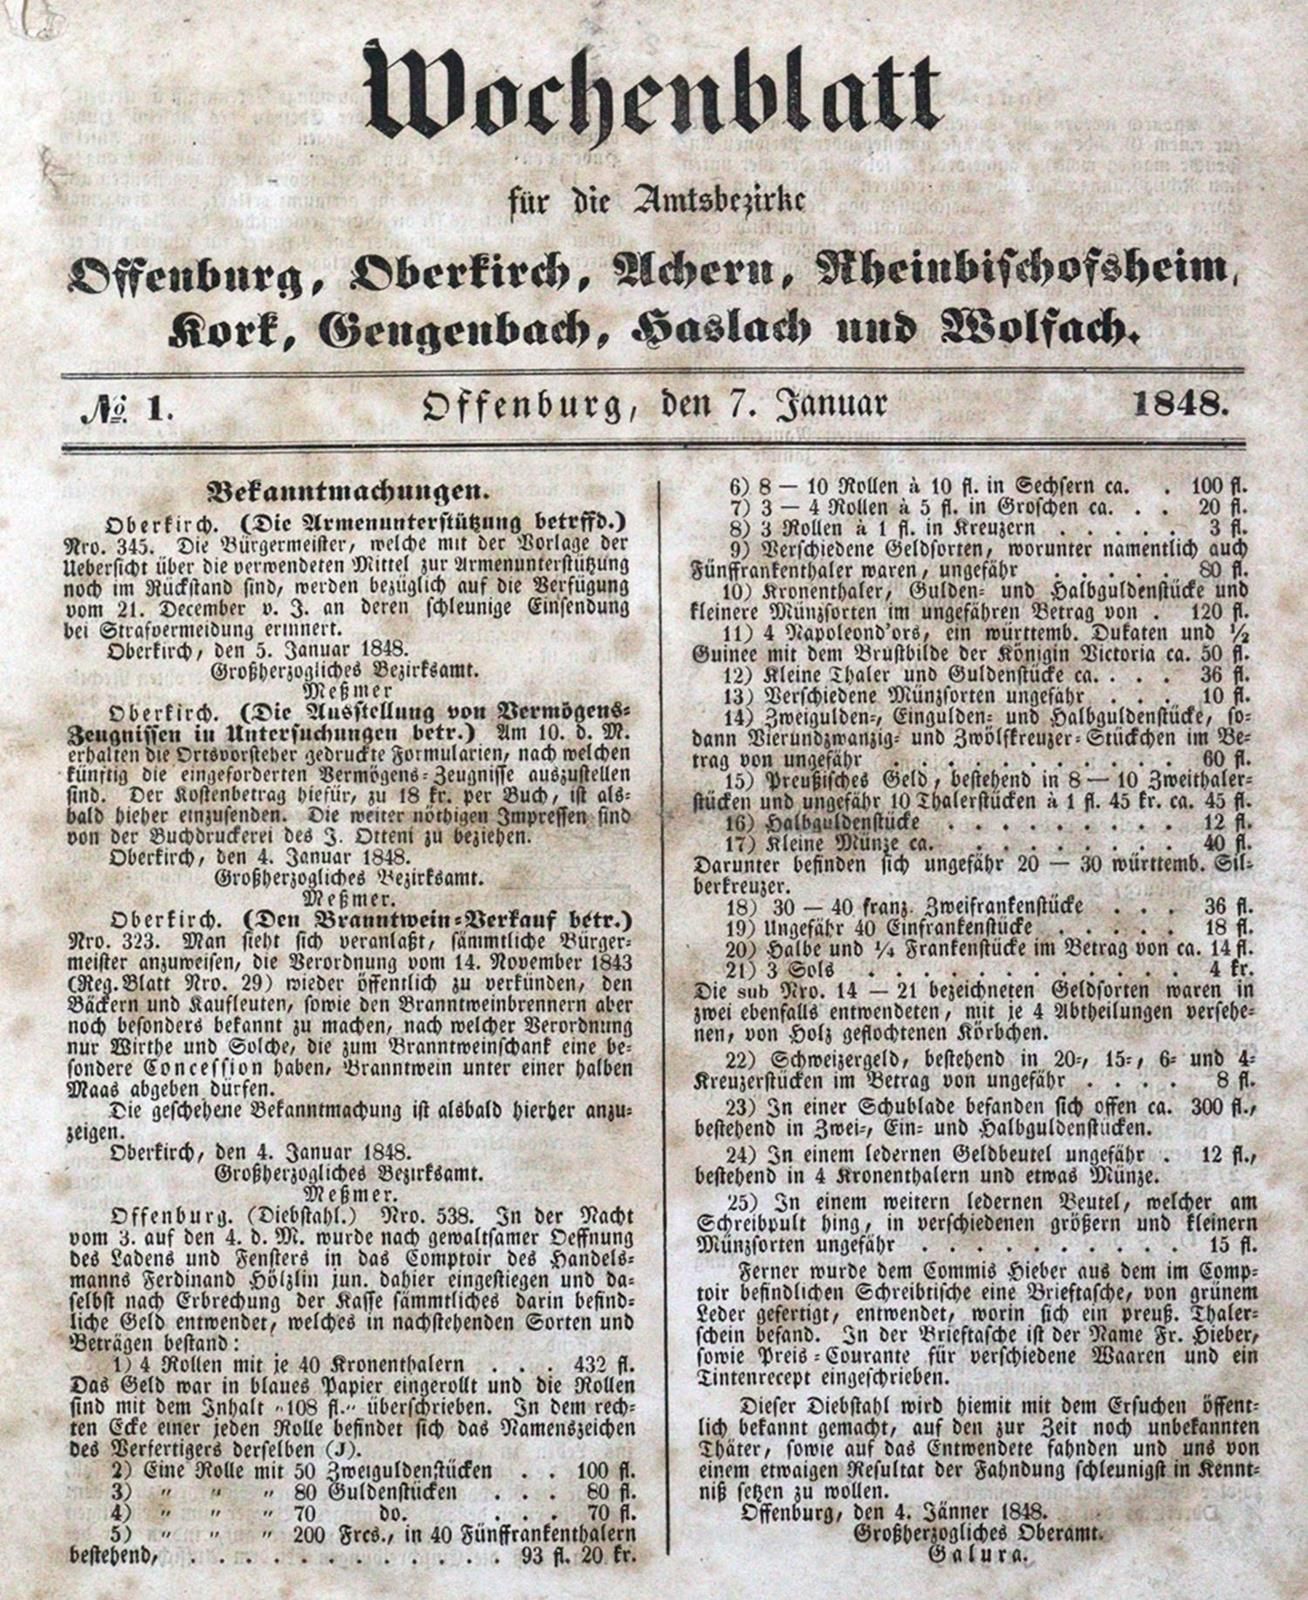 Wochenblatt pour les districts de Offenburg, Oberkirch, Achern, Rheinbischofshei&hellip;